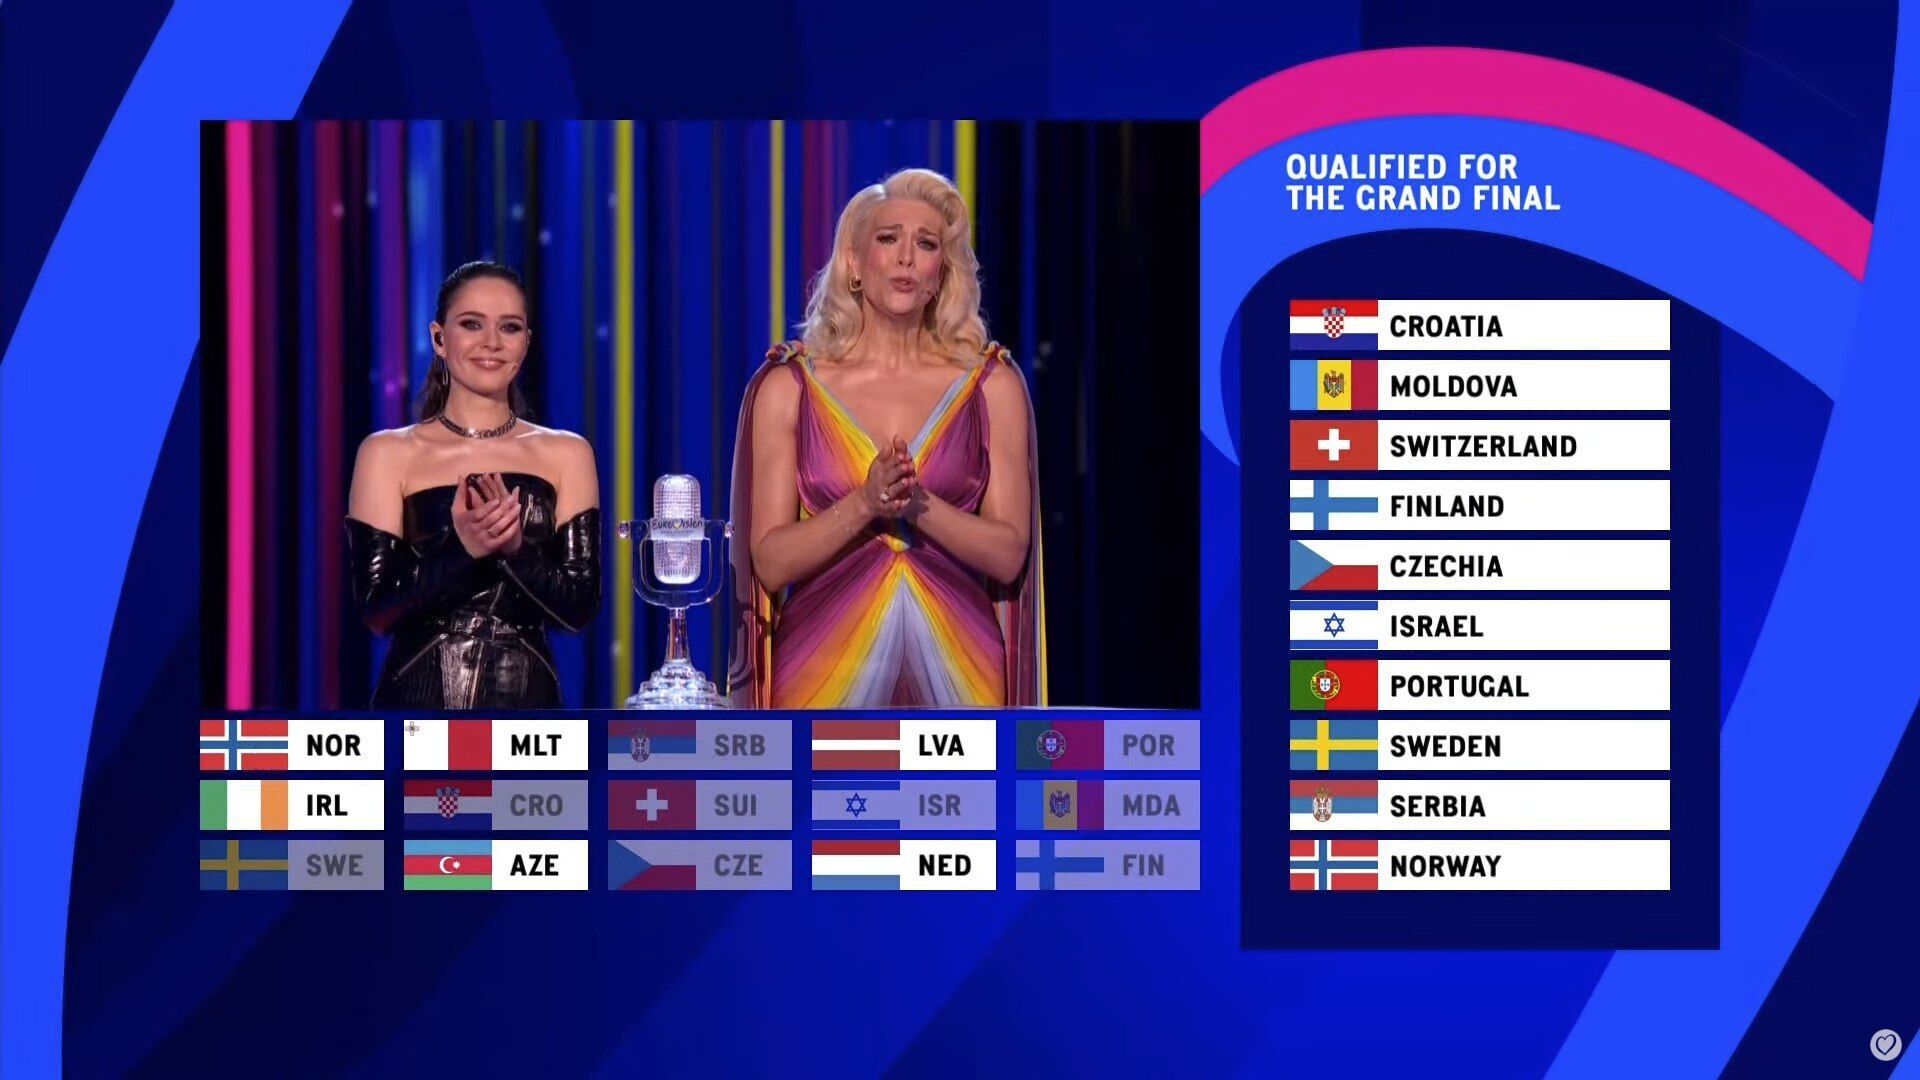 Cual es la favorita de eurovision 2023